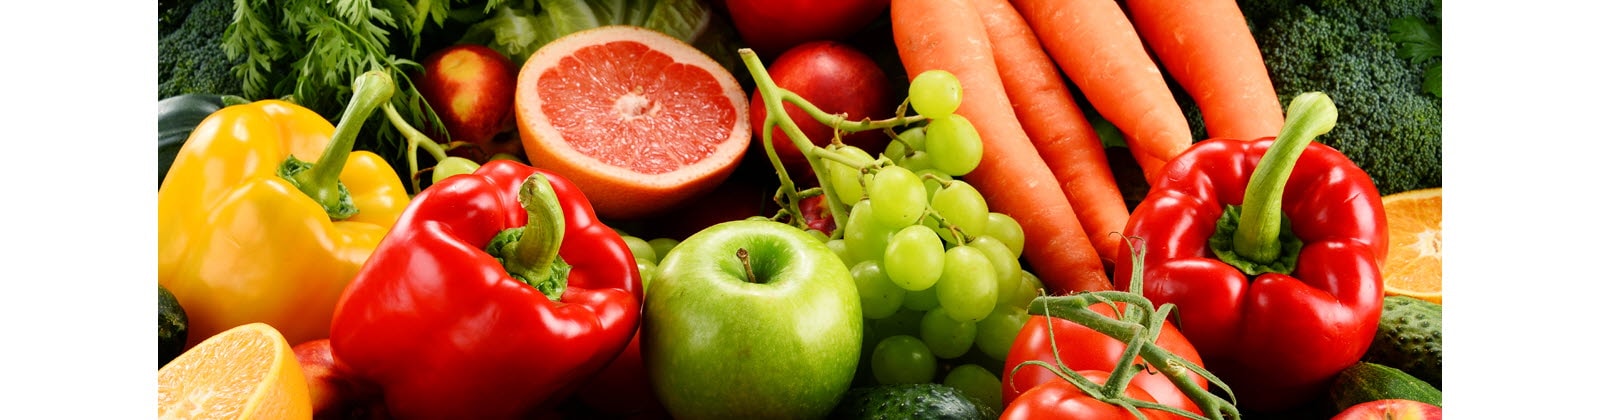 Une sélection de fruits et légumes frais et colorés.